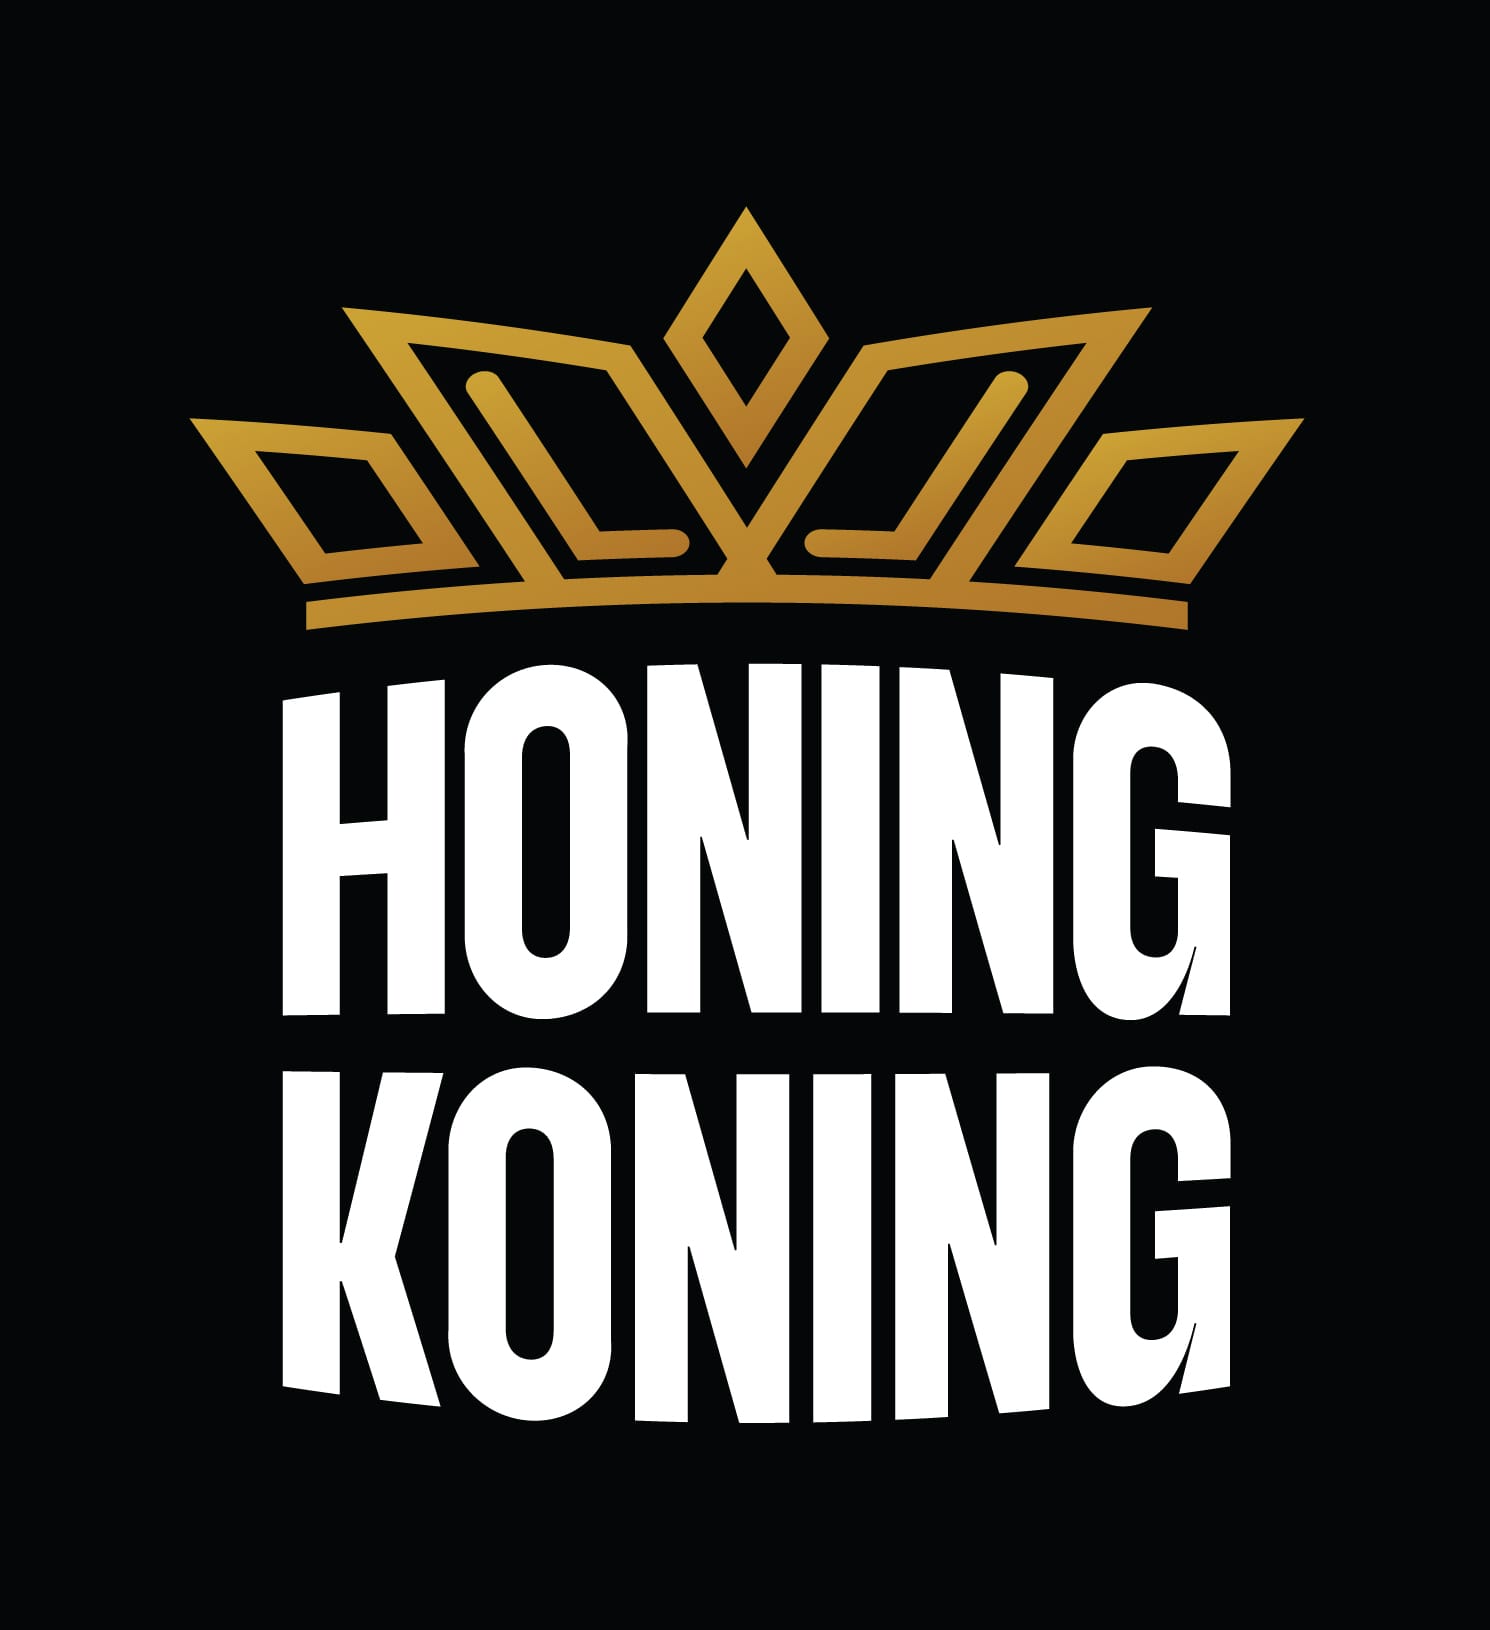 HoningKoning